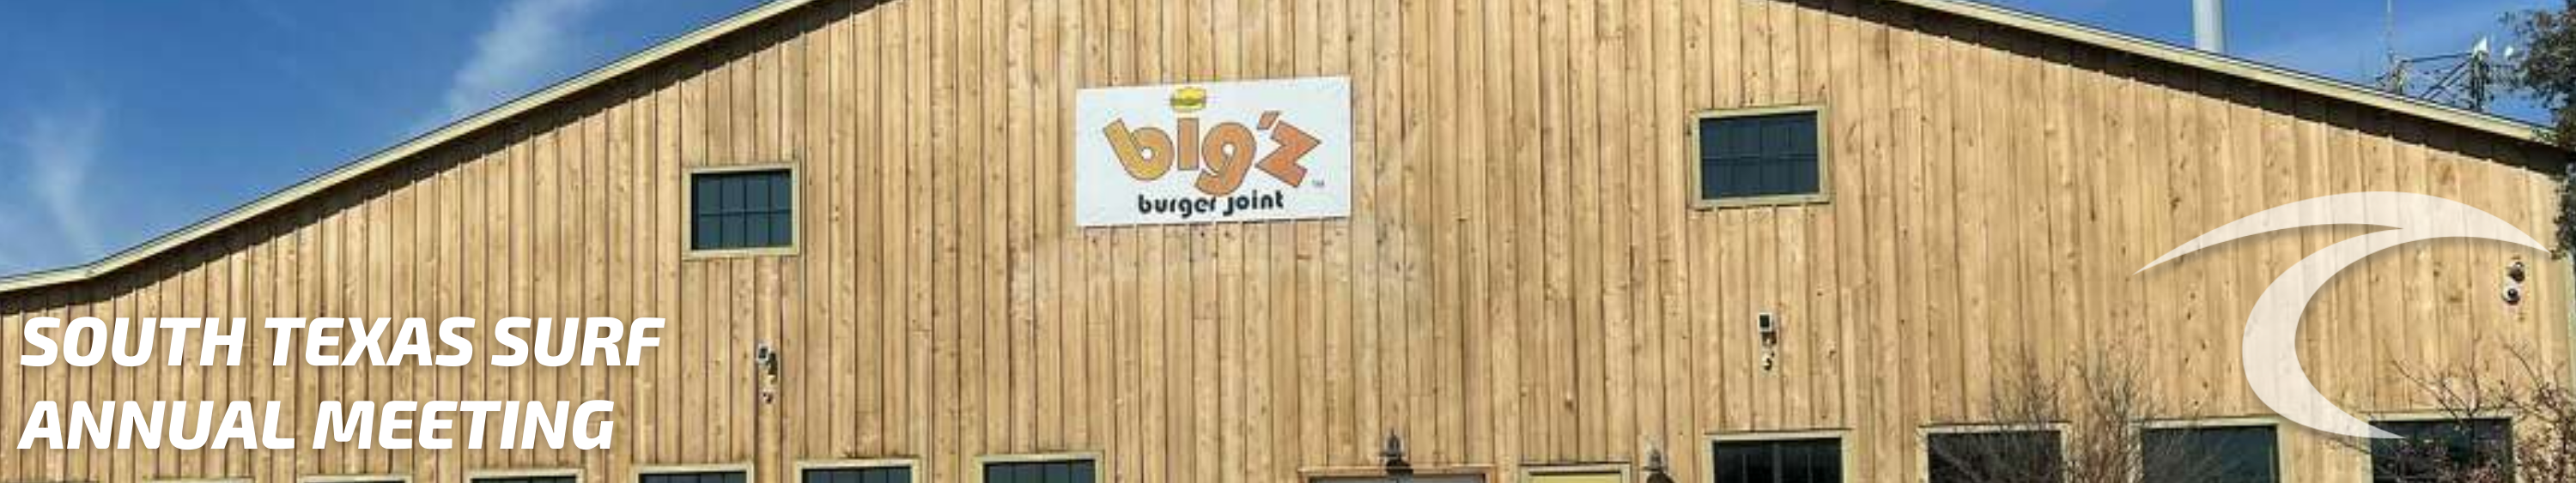 Big'z Burger Joint Banner